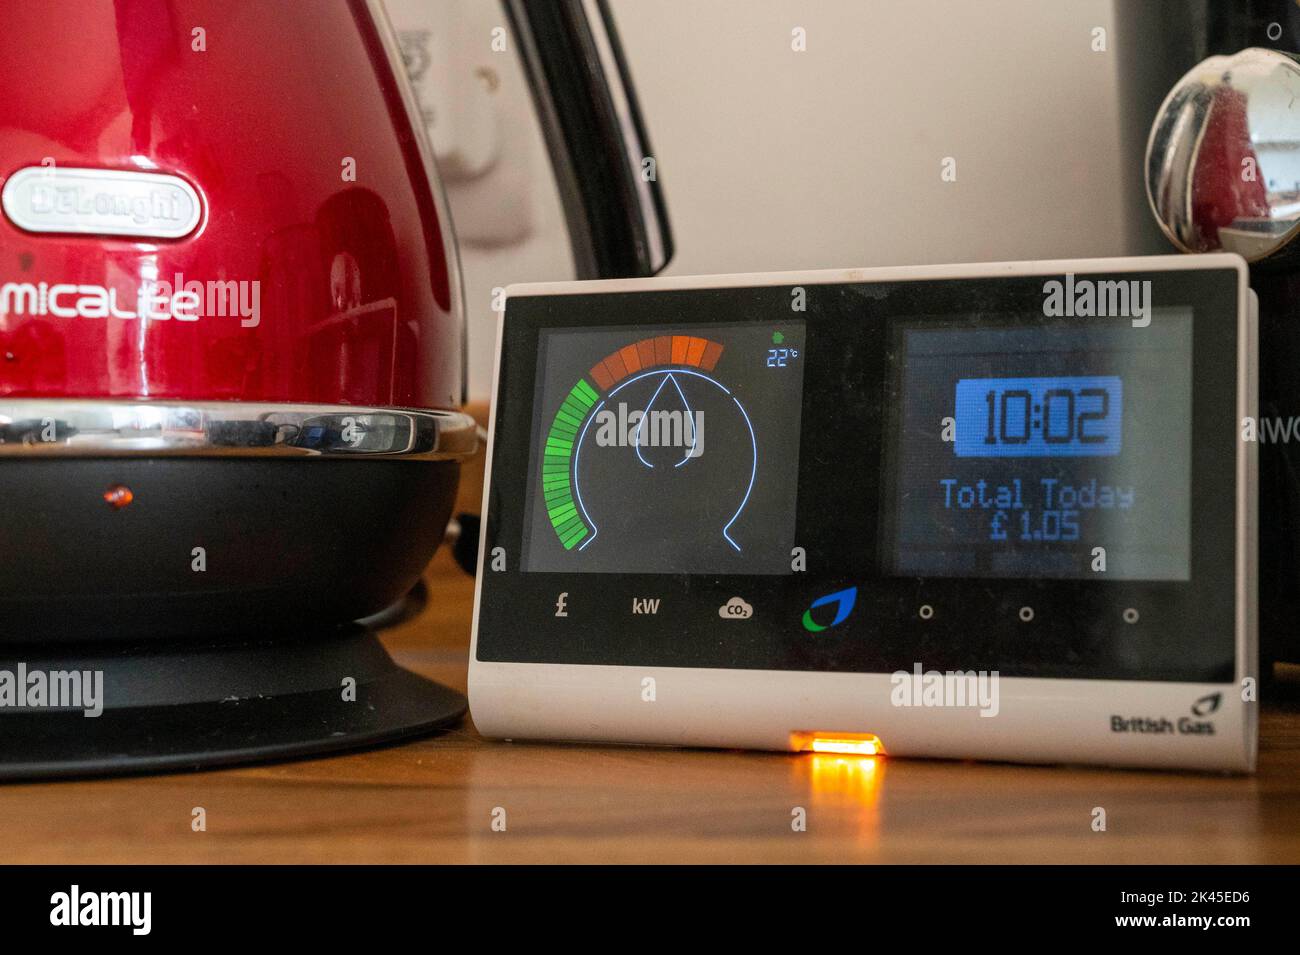 British Gas Smart meter indiquant la quantité d'électricité utilisée lors de l'ébullition d'une bouilloire UK Banque D'Images